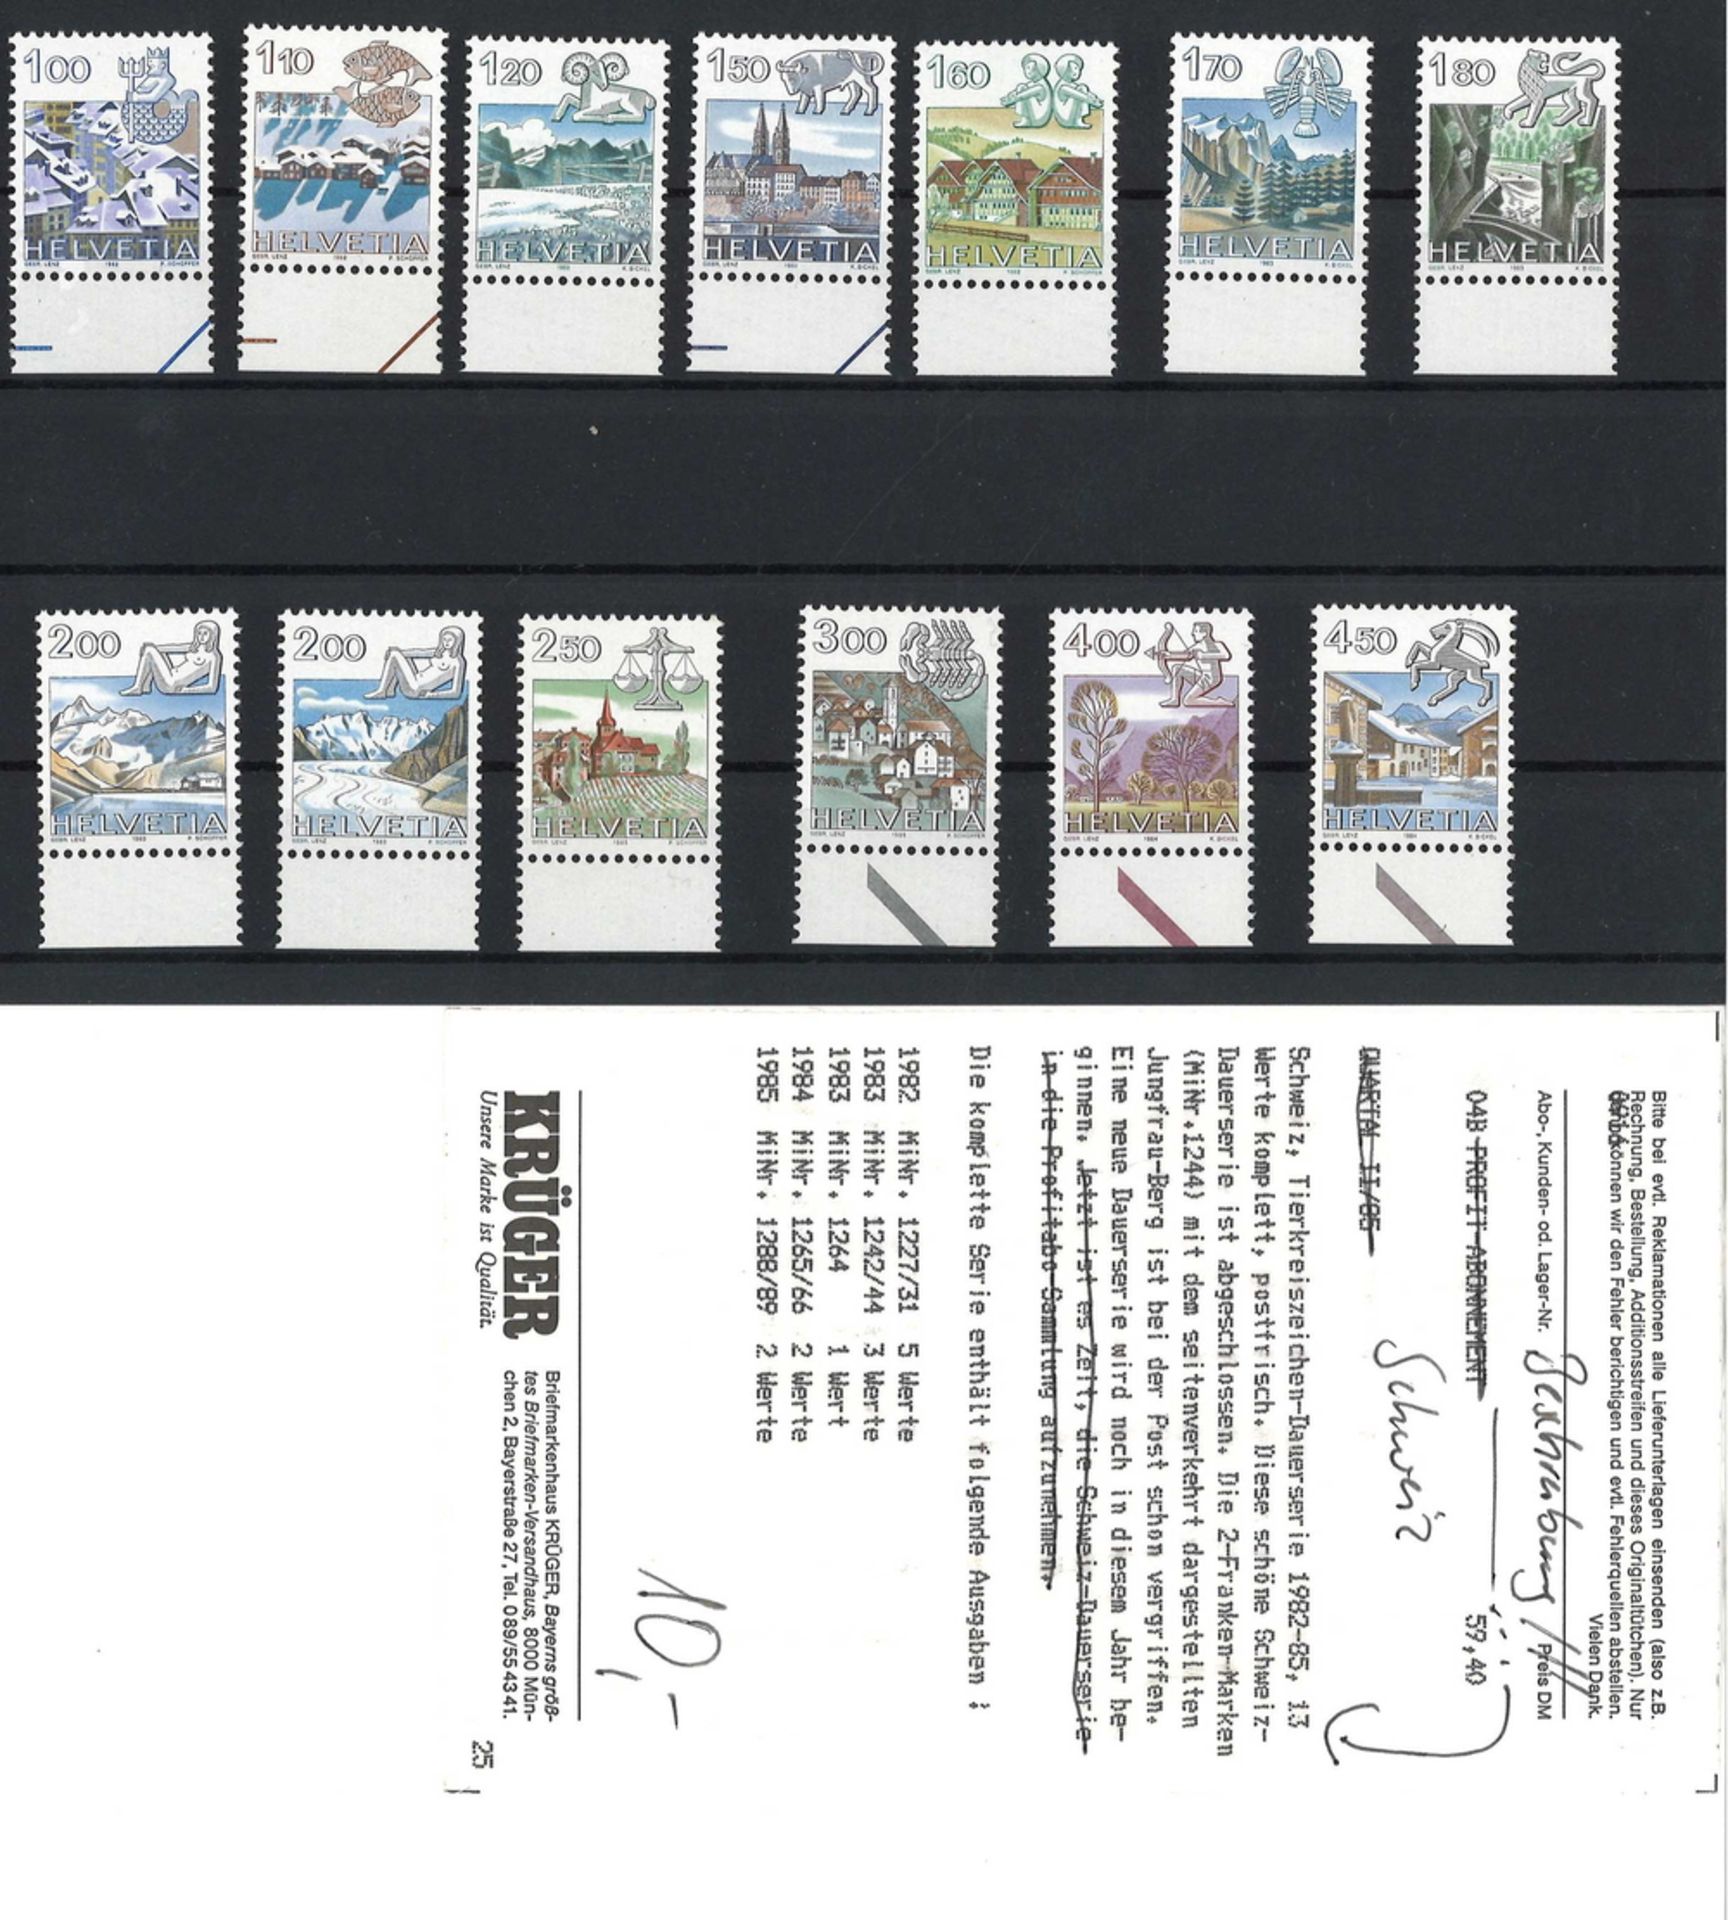 Schweiz, Tierkreiszeichen-Dauerserie 1982-85, 13 Werte komplett, postfrisch. Diese schöne Schweiz-